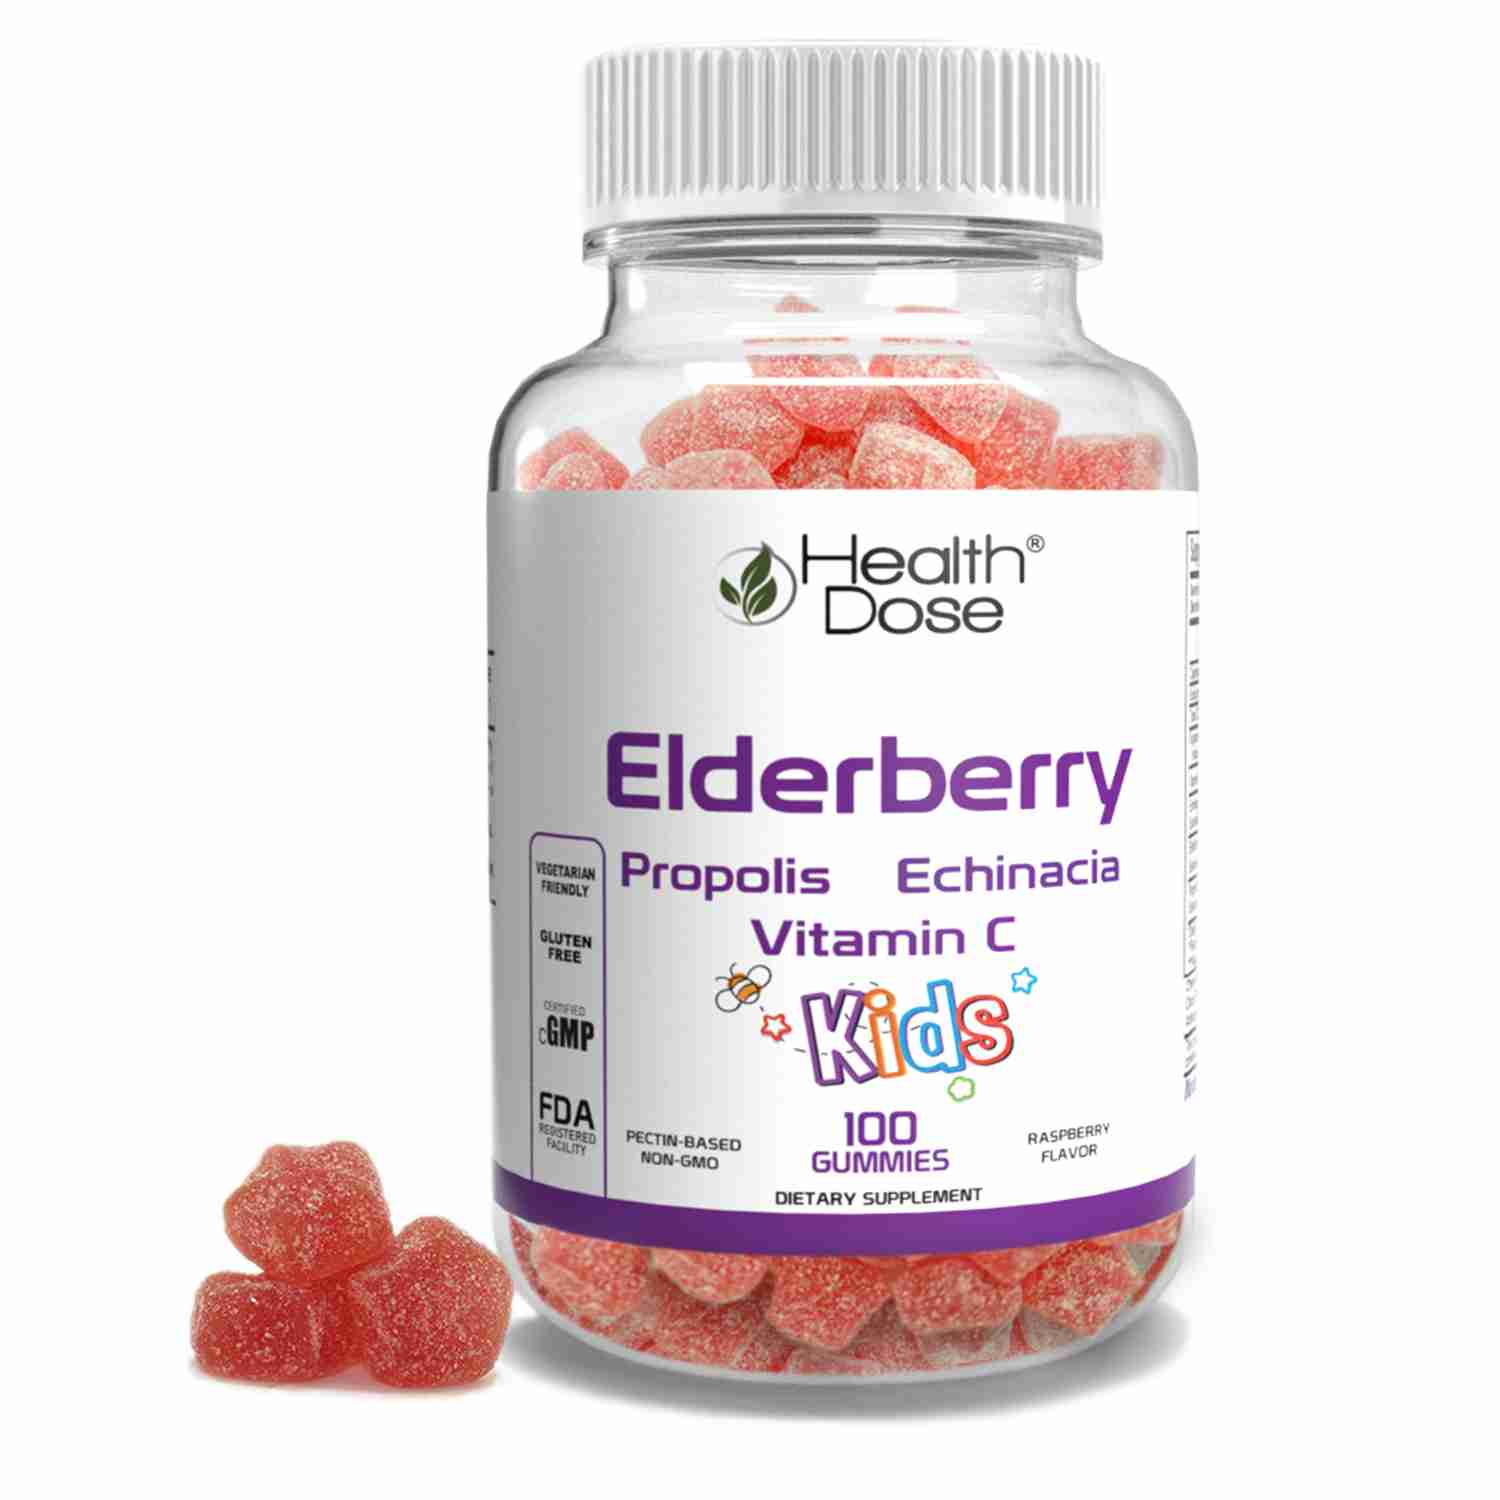 elderberry-gummies with cash back rebate